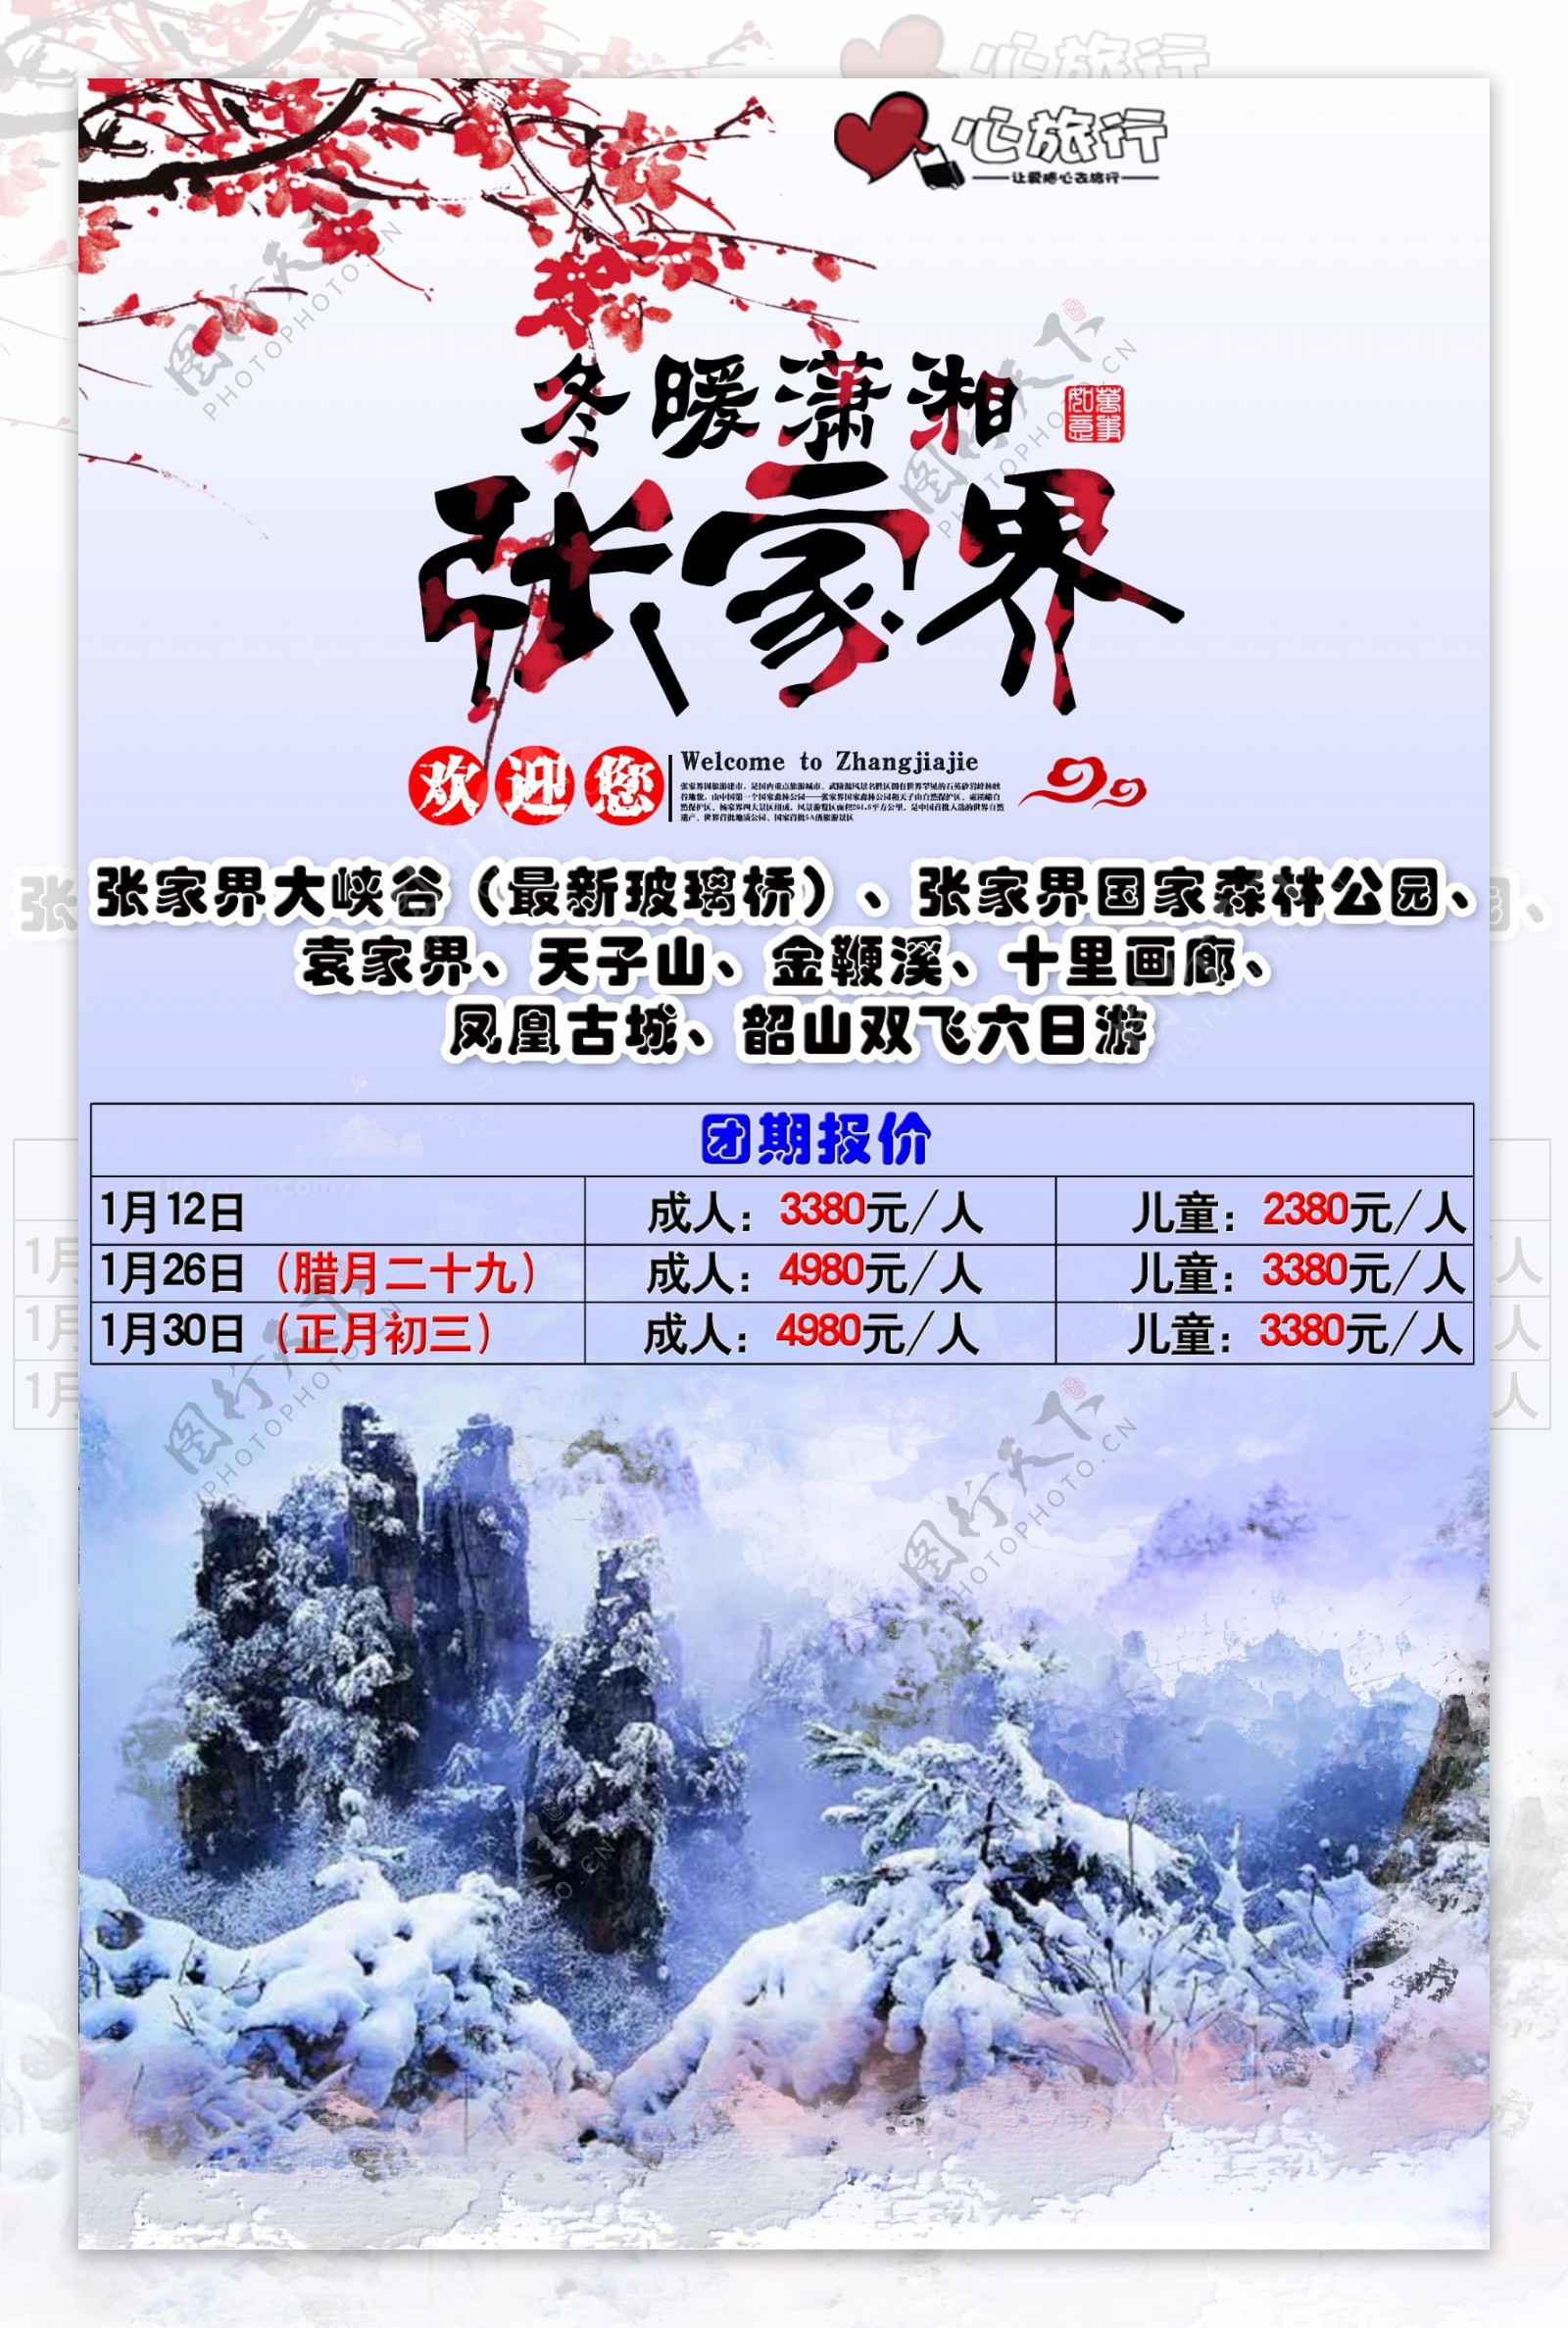 冬暖潇湘张家界旅游宣传